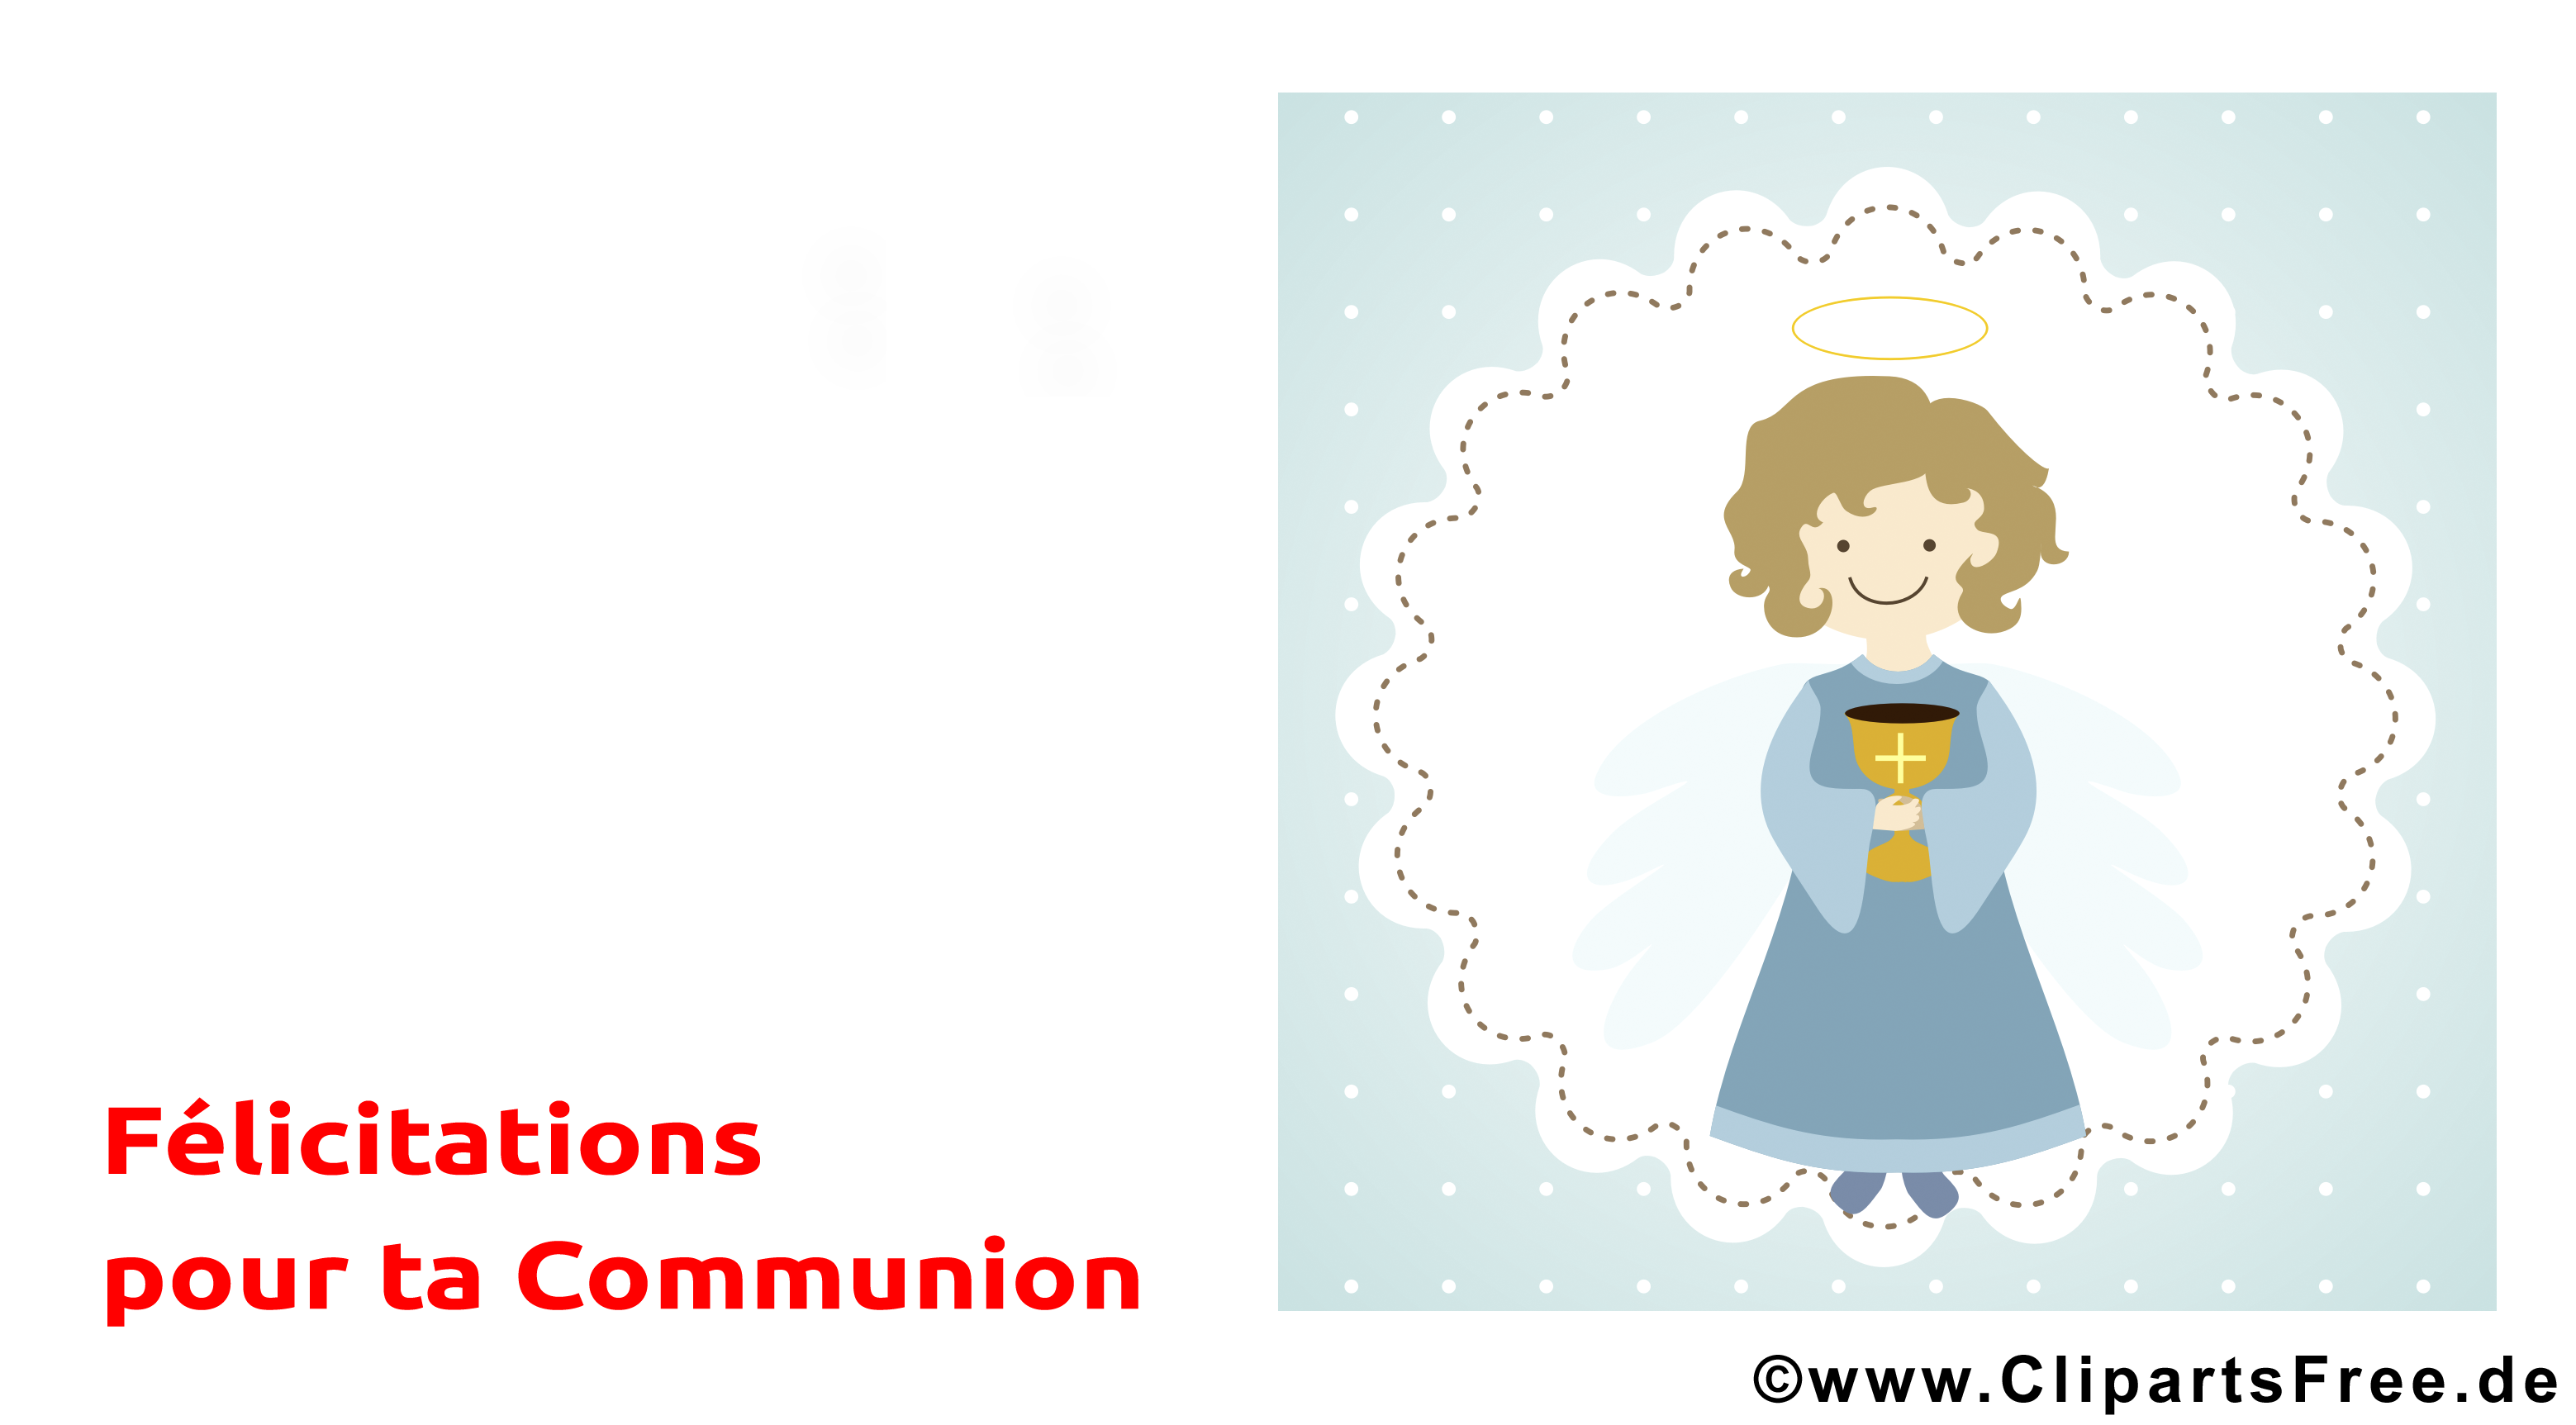 Femme image – Communion images cliparts